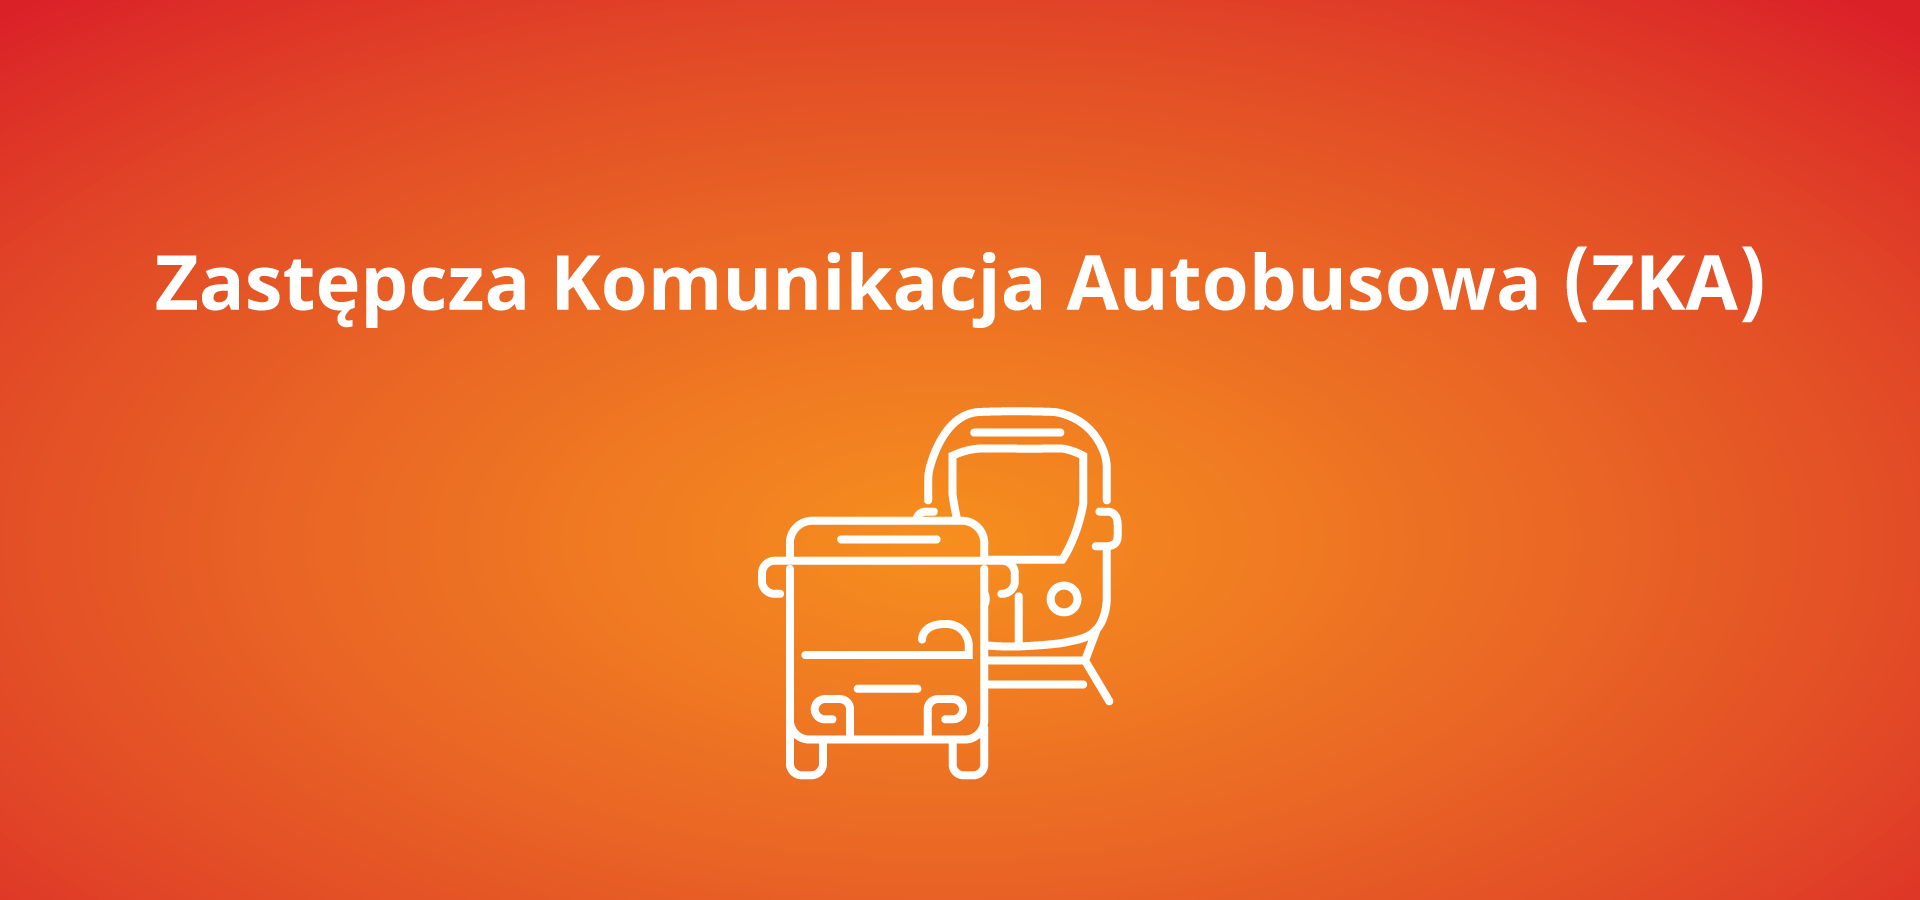 Autobusowa Komunikacja Zastępcza Zielona Góra - Zbąszynek - Zielona Góra